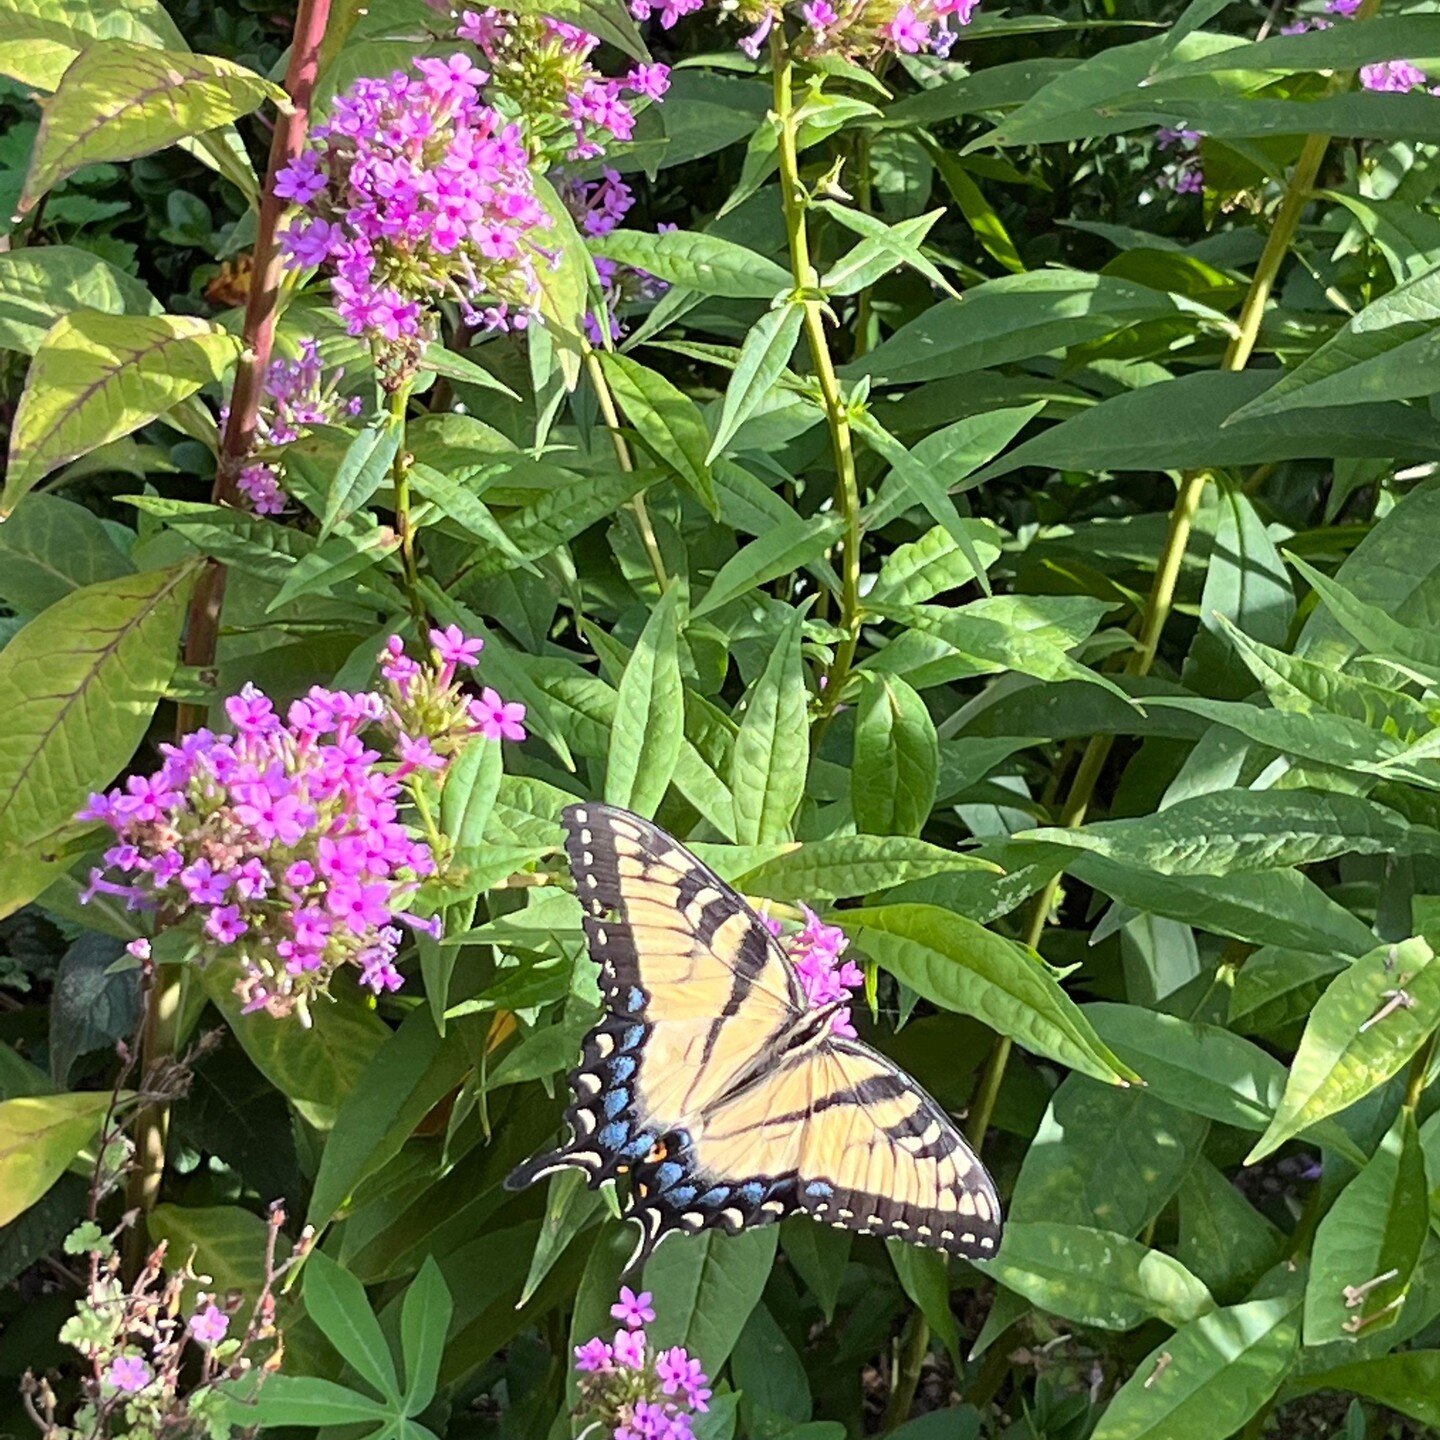 &quot;Tiger swallowtail alighting Phlox alighting Phlox paniculata 'Jeana'&quot; - Helen Yoest 

Read more about Joslin Garden at: https://cityofoaksfoundation.org/helens-blog